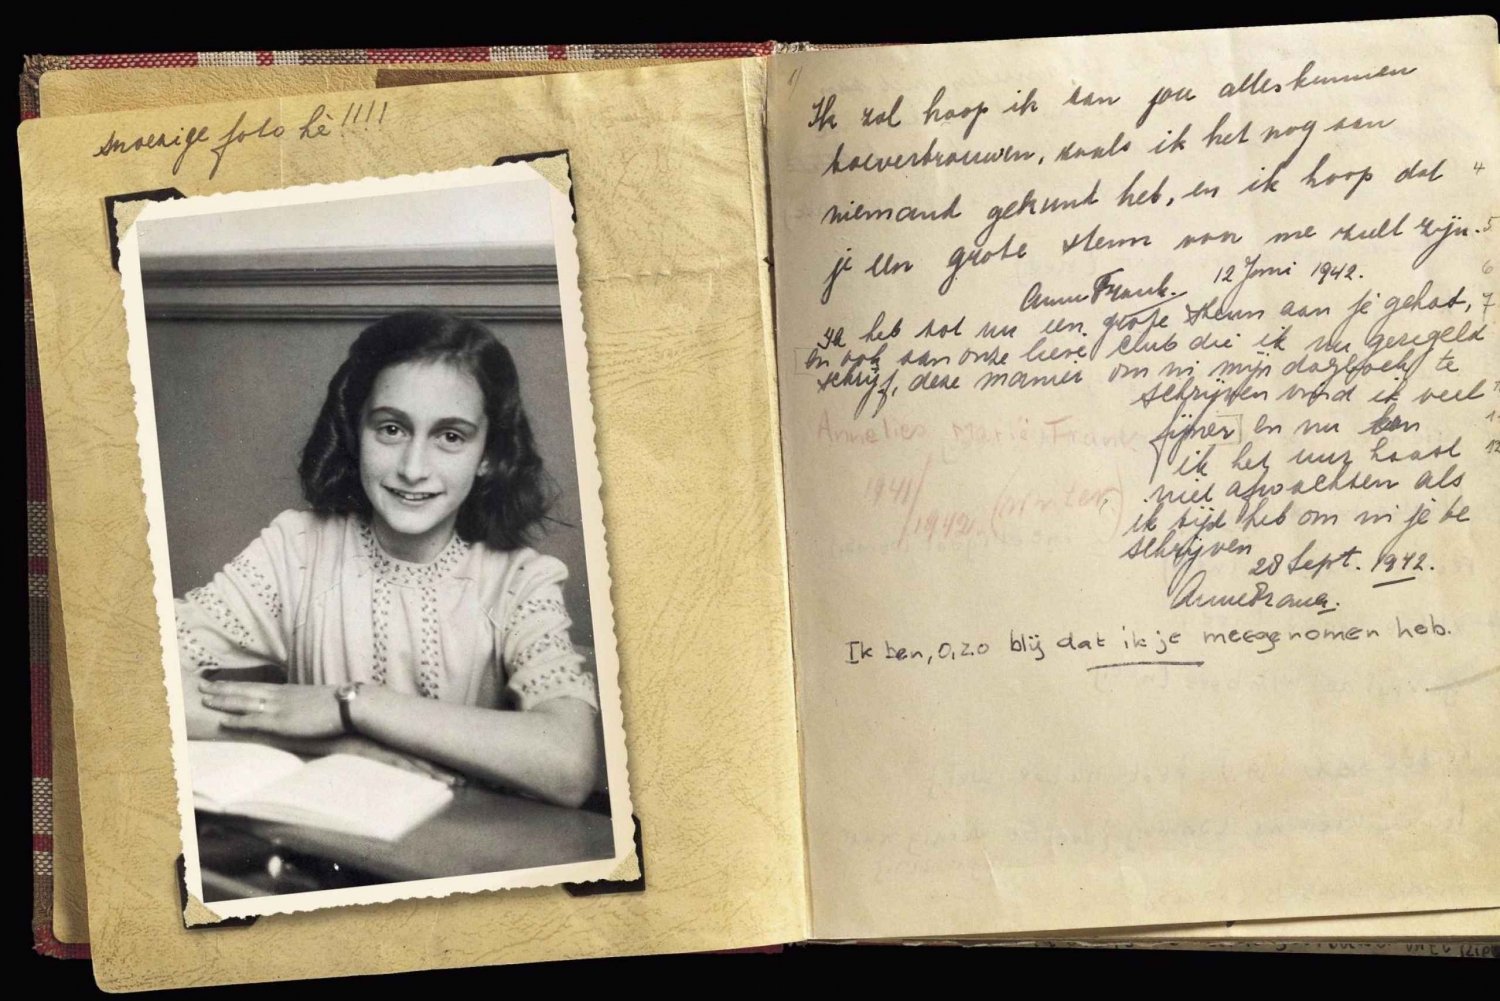 Amsterdam: Tour privato di Anna Frank e del quartiere ebraico